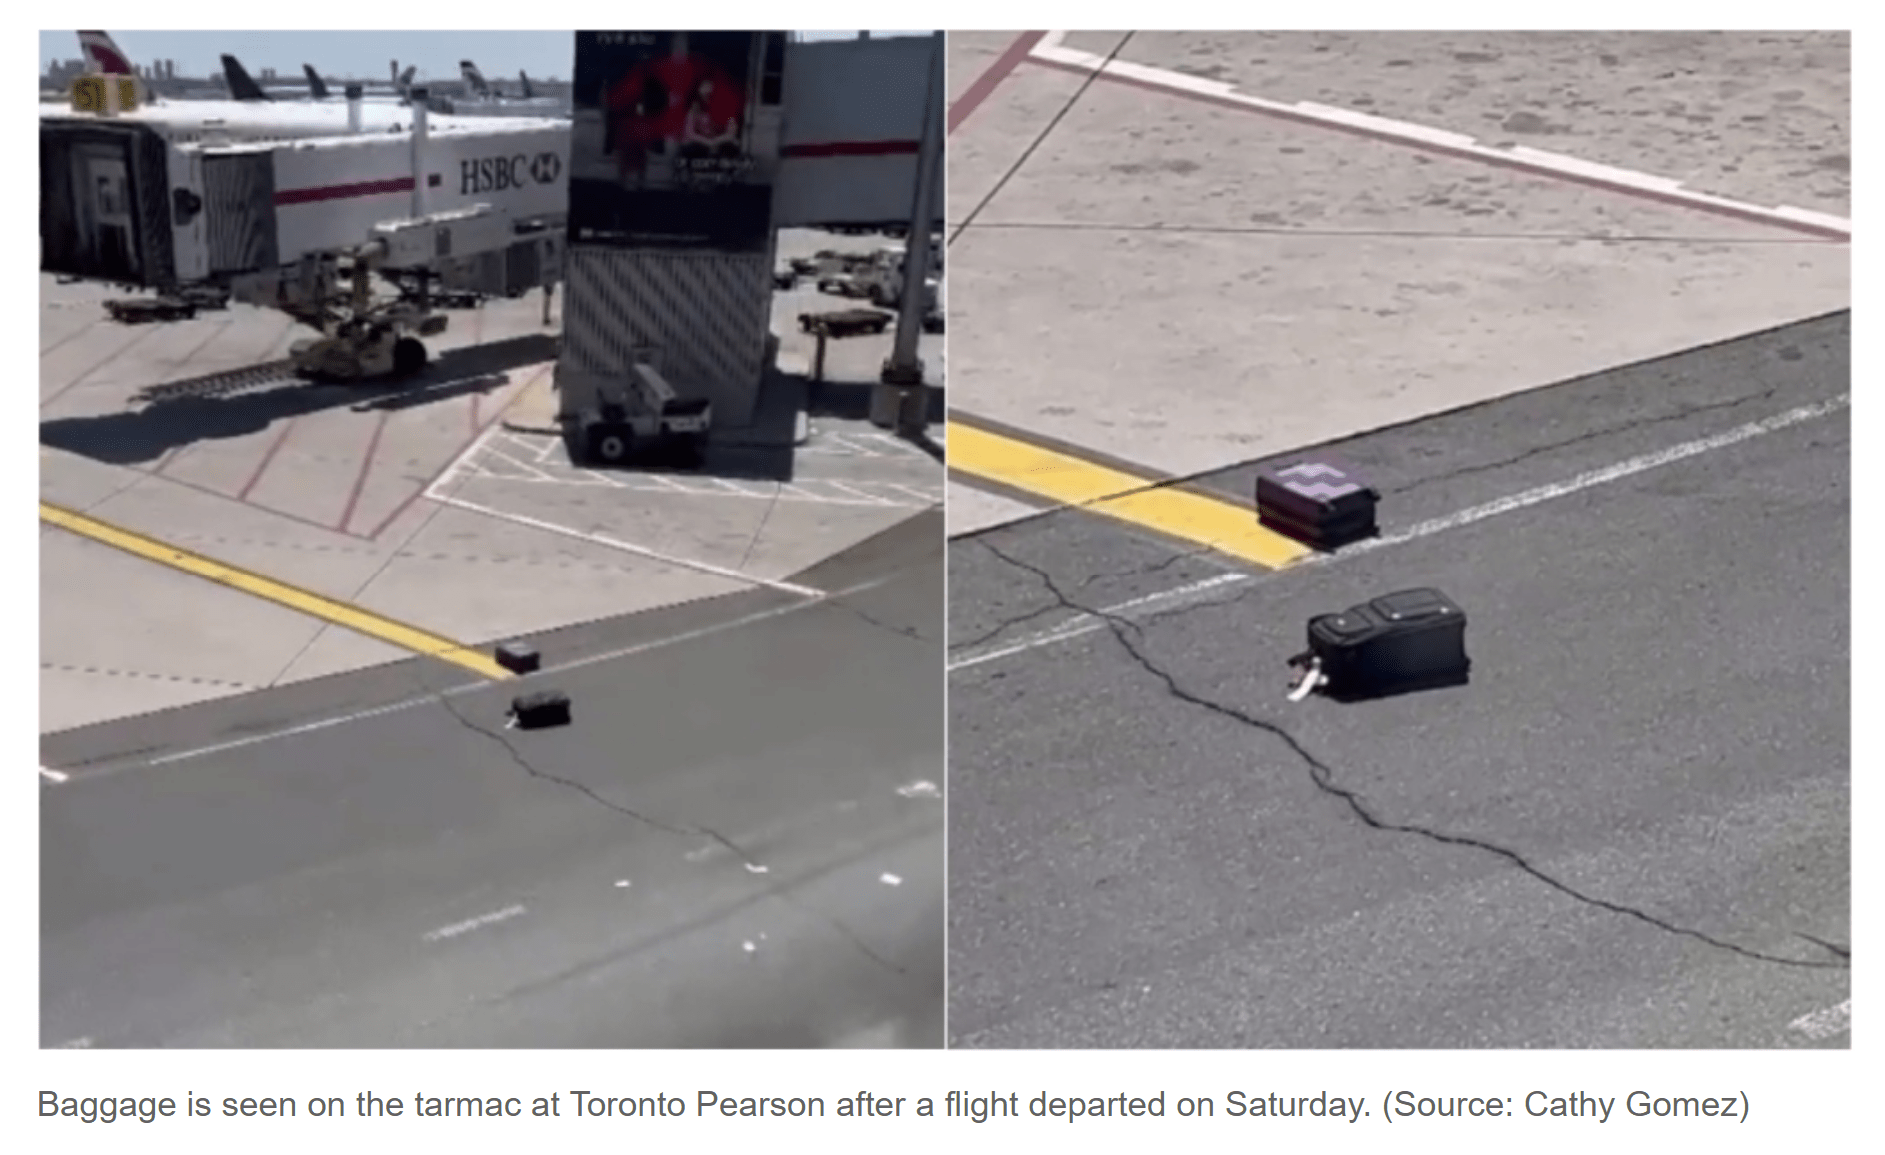 مسافران فرودگاه پیرسون تورنتو علاوه بر تاخیر طولانی شاهد انداخته شدن چمدان هایشان روی باند فرودگاه بودند